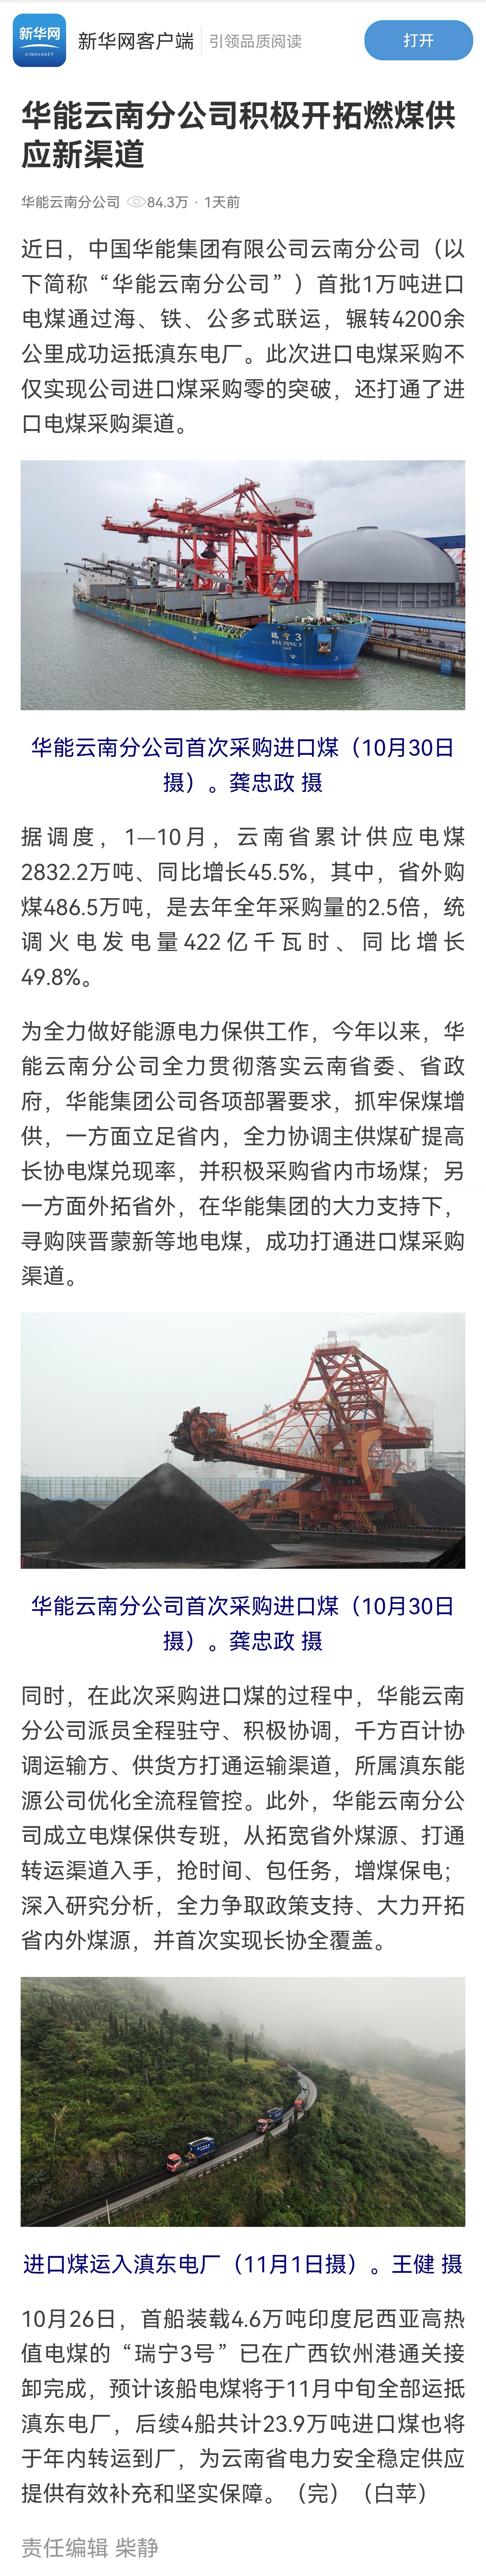 新華網客戶端：明升ms88云南分公司積極開拓燃煤供應新渠道